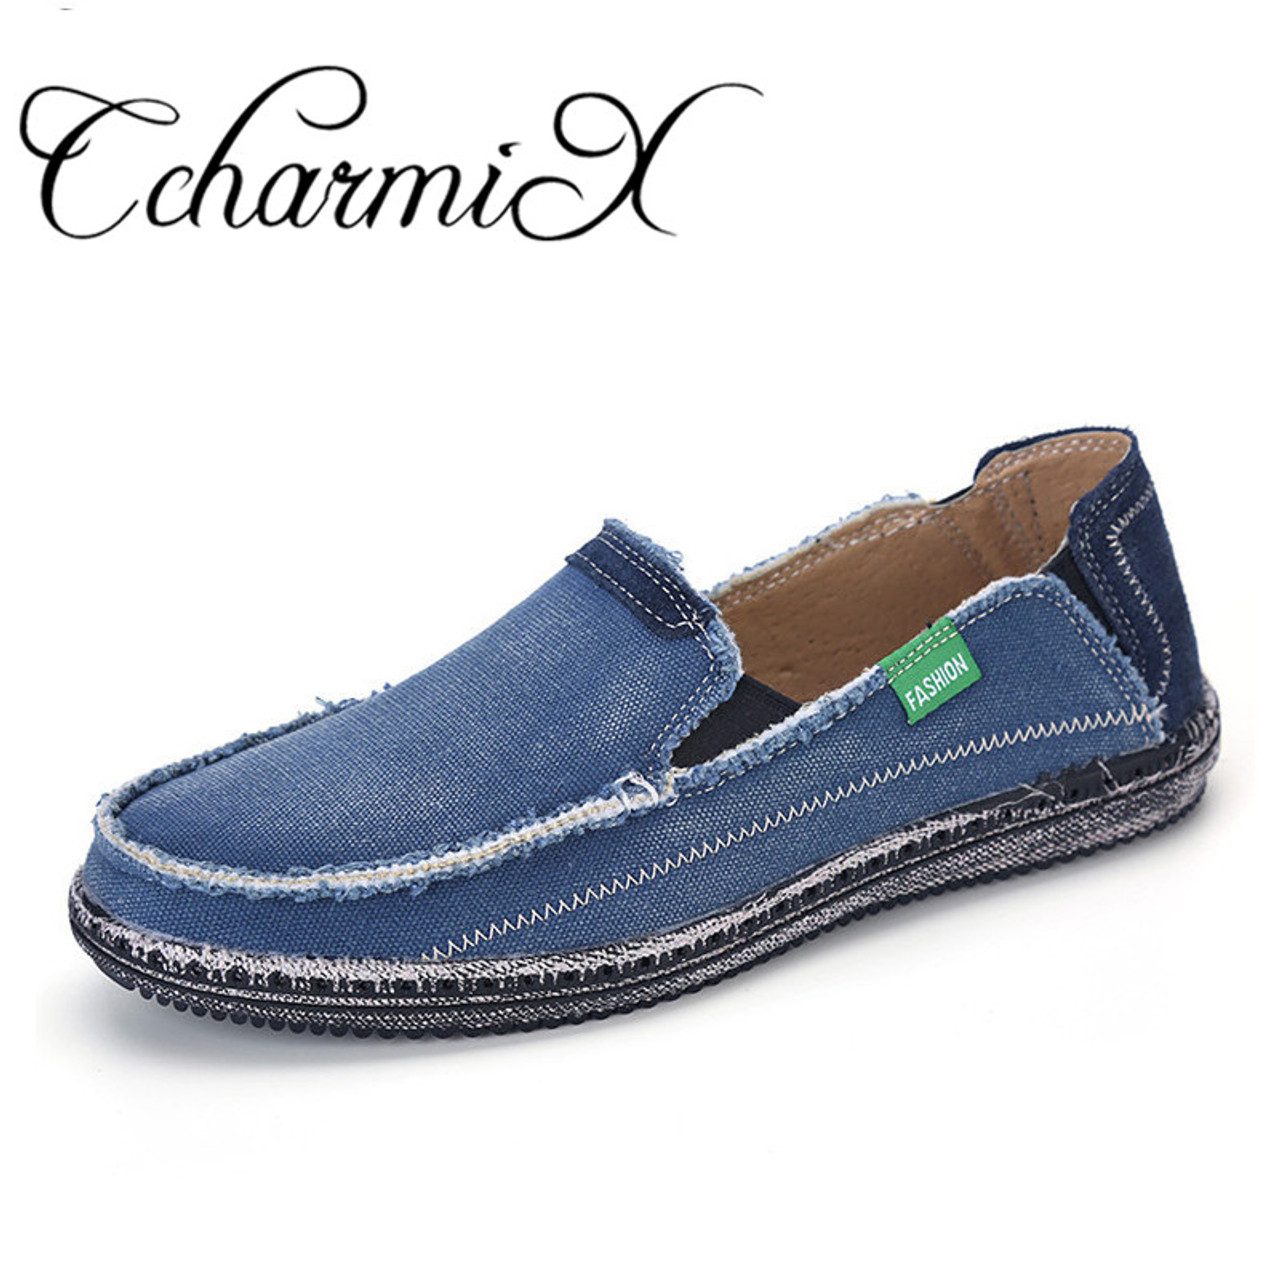 CcharmiX Brand New Mens Jeans Canvas 